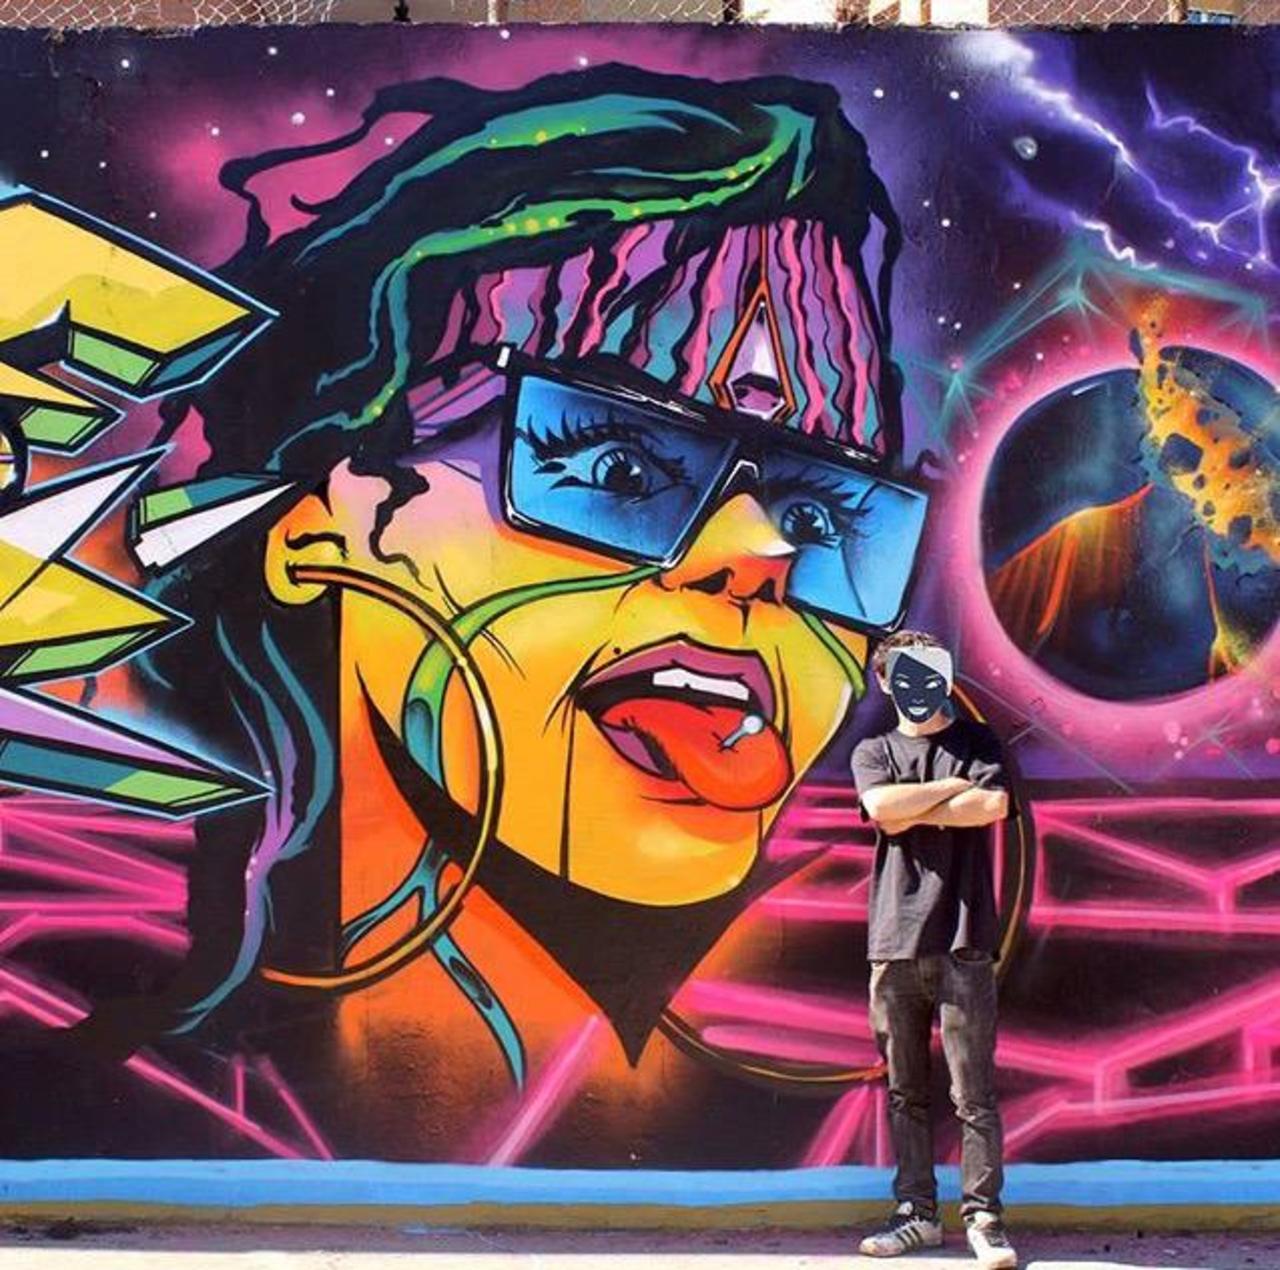 Brilliant new Street Art by the artist Jaycaes

#art #graffiti #mural #streetart http://t.co/ZJlgMAUa5J